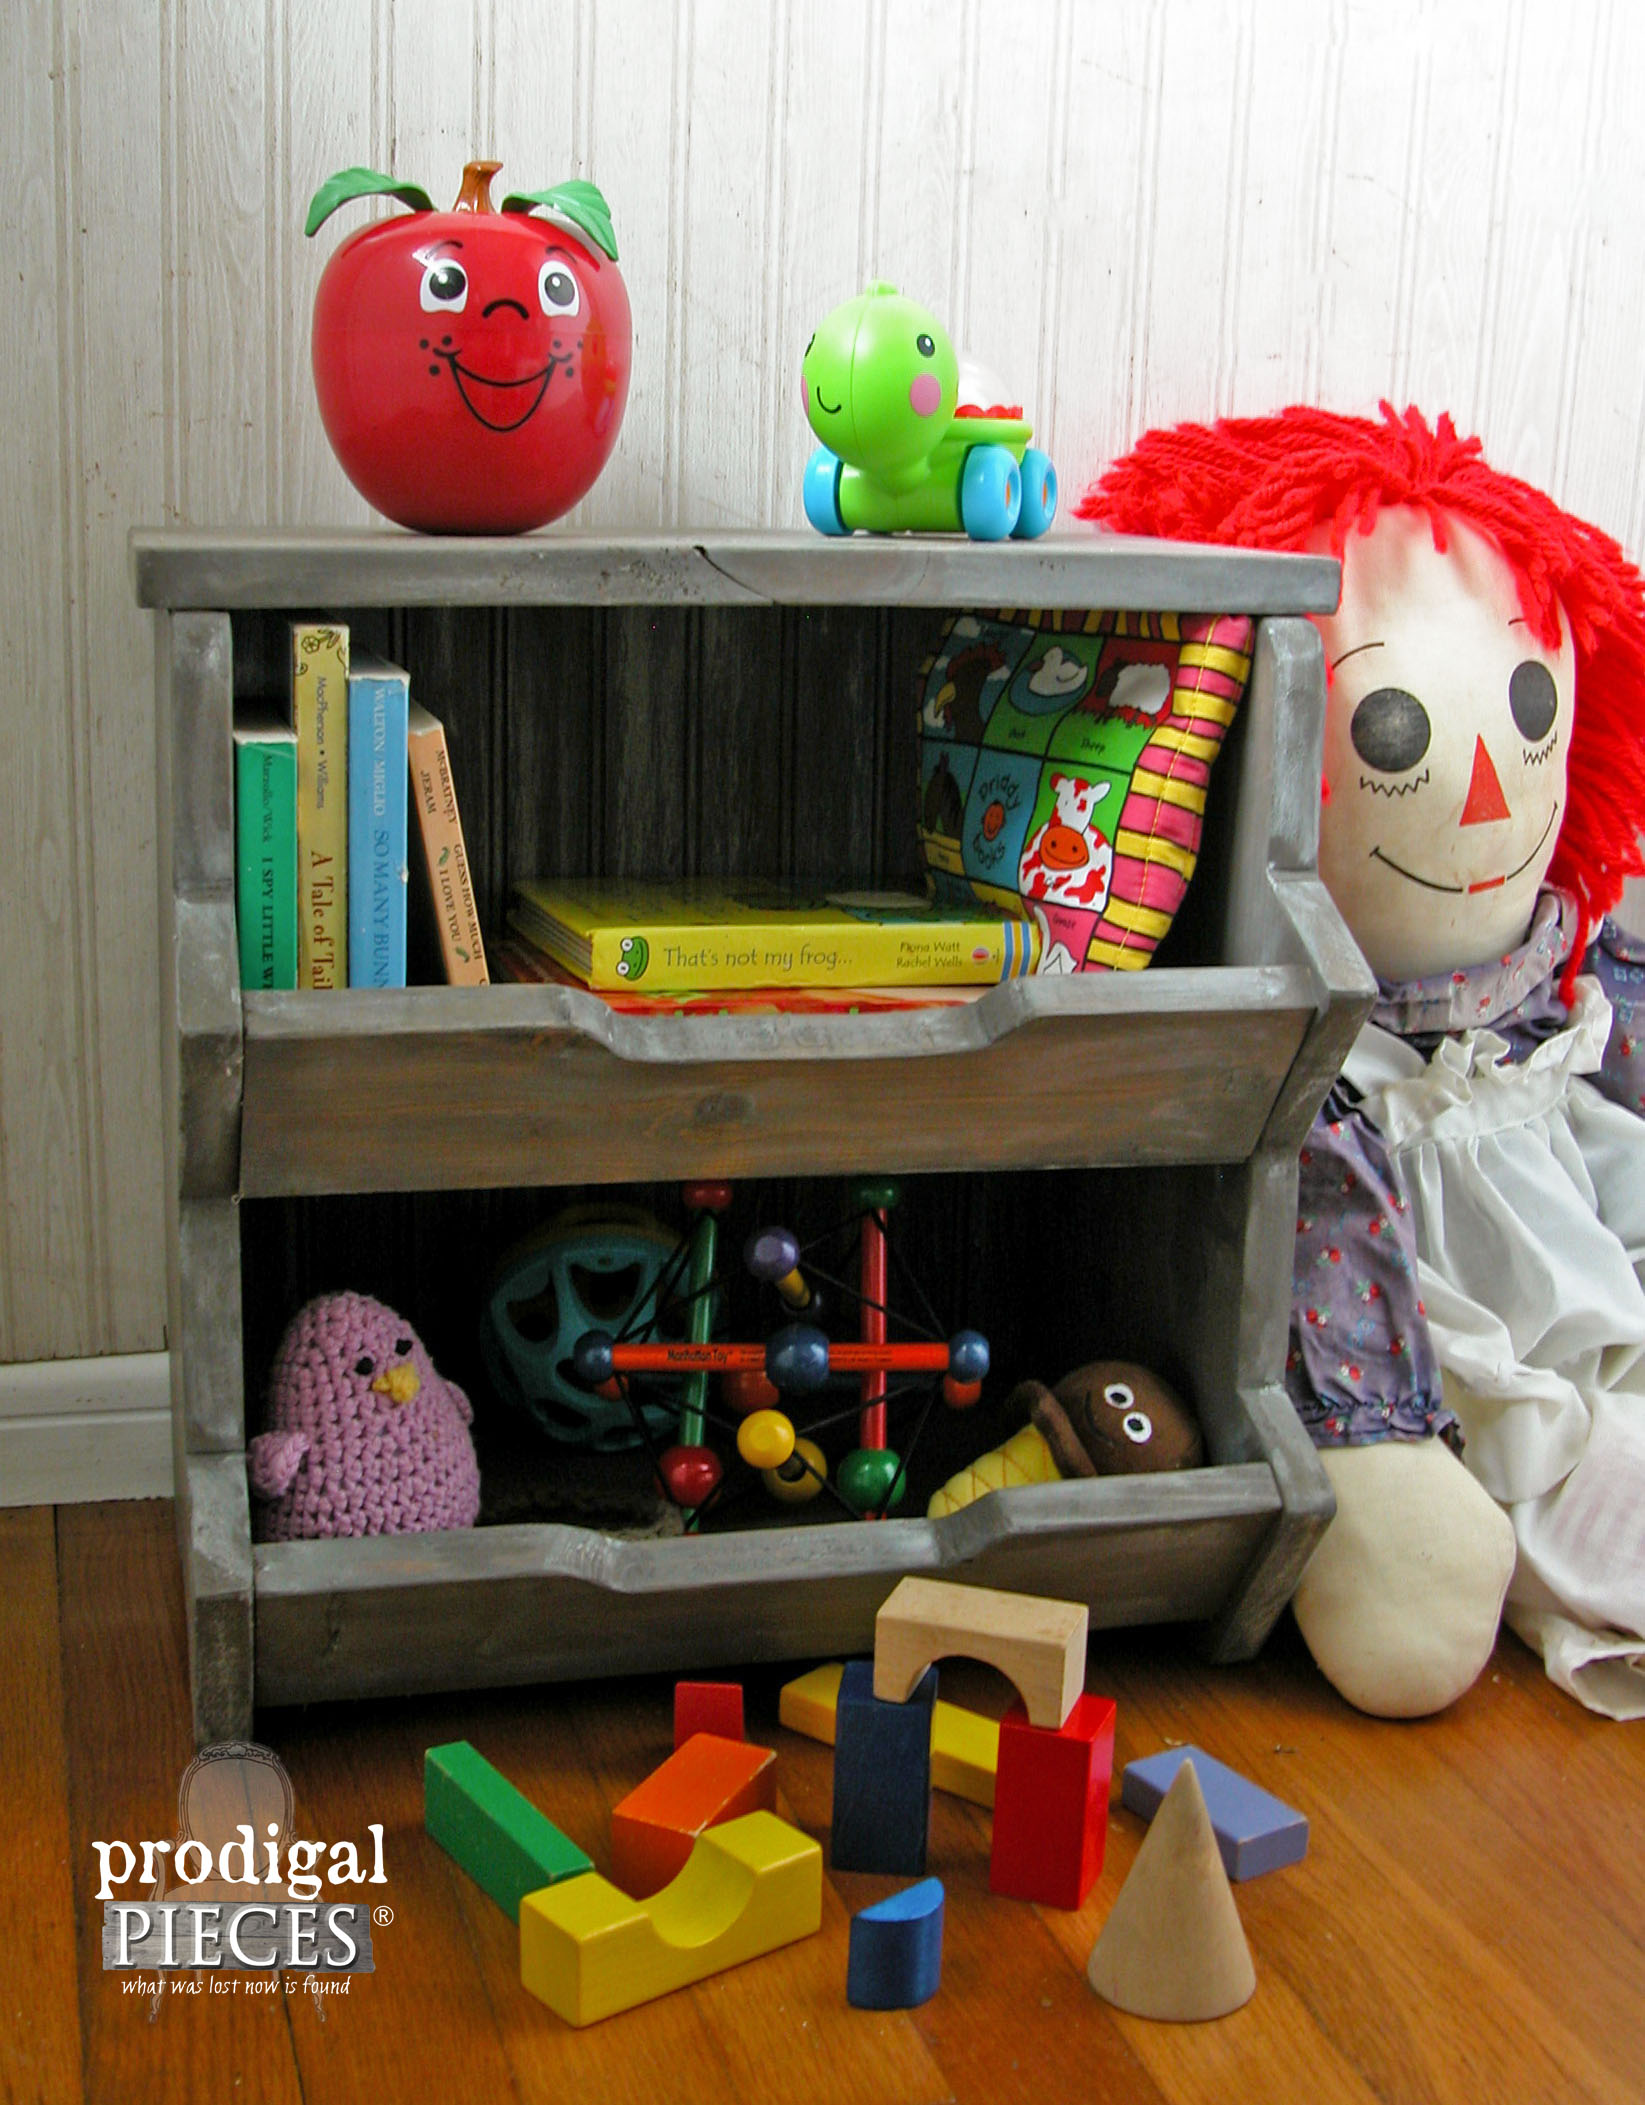 Wooden Toy Storage Bin Tutorial & Plans by Prodigal Pieces | www.prodigalpieces.com